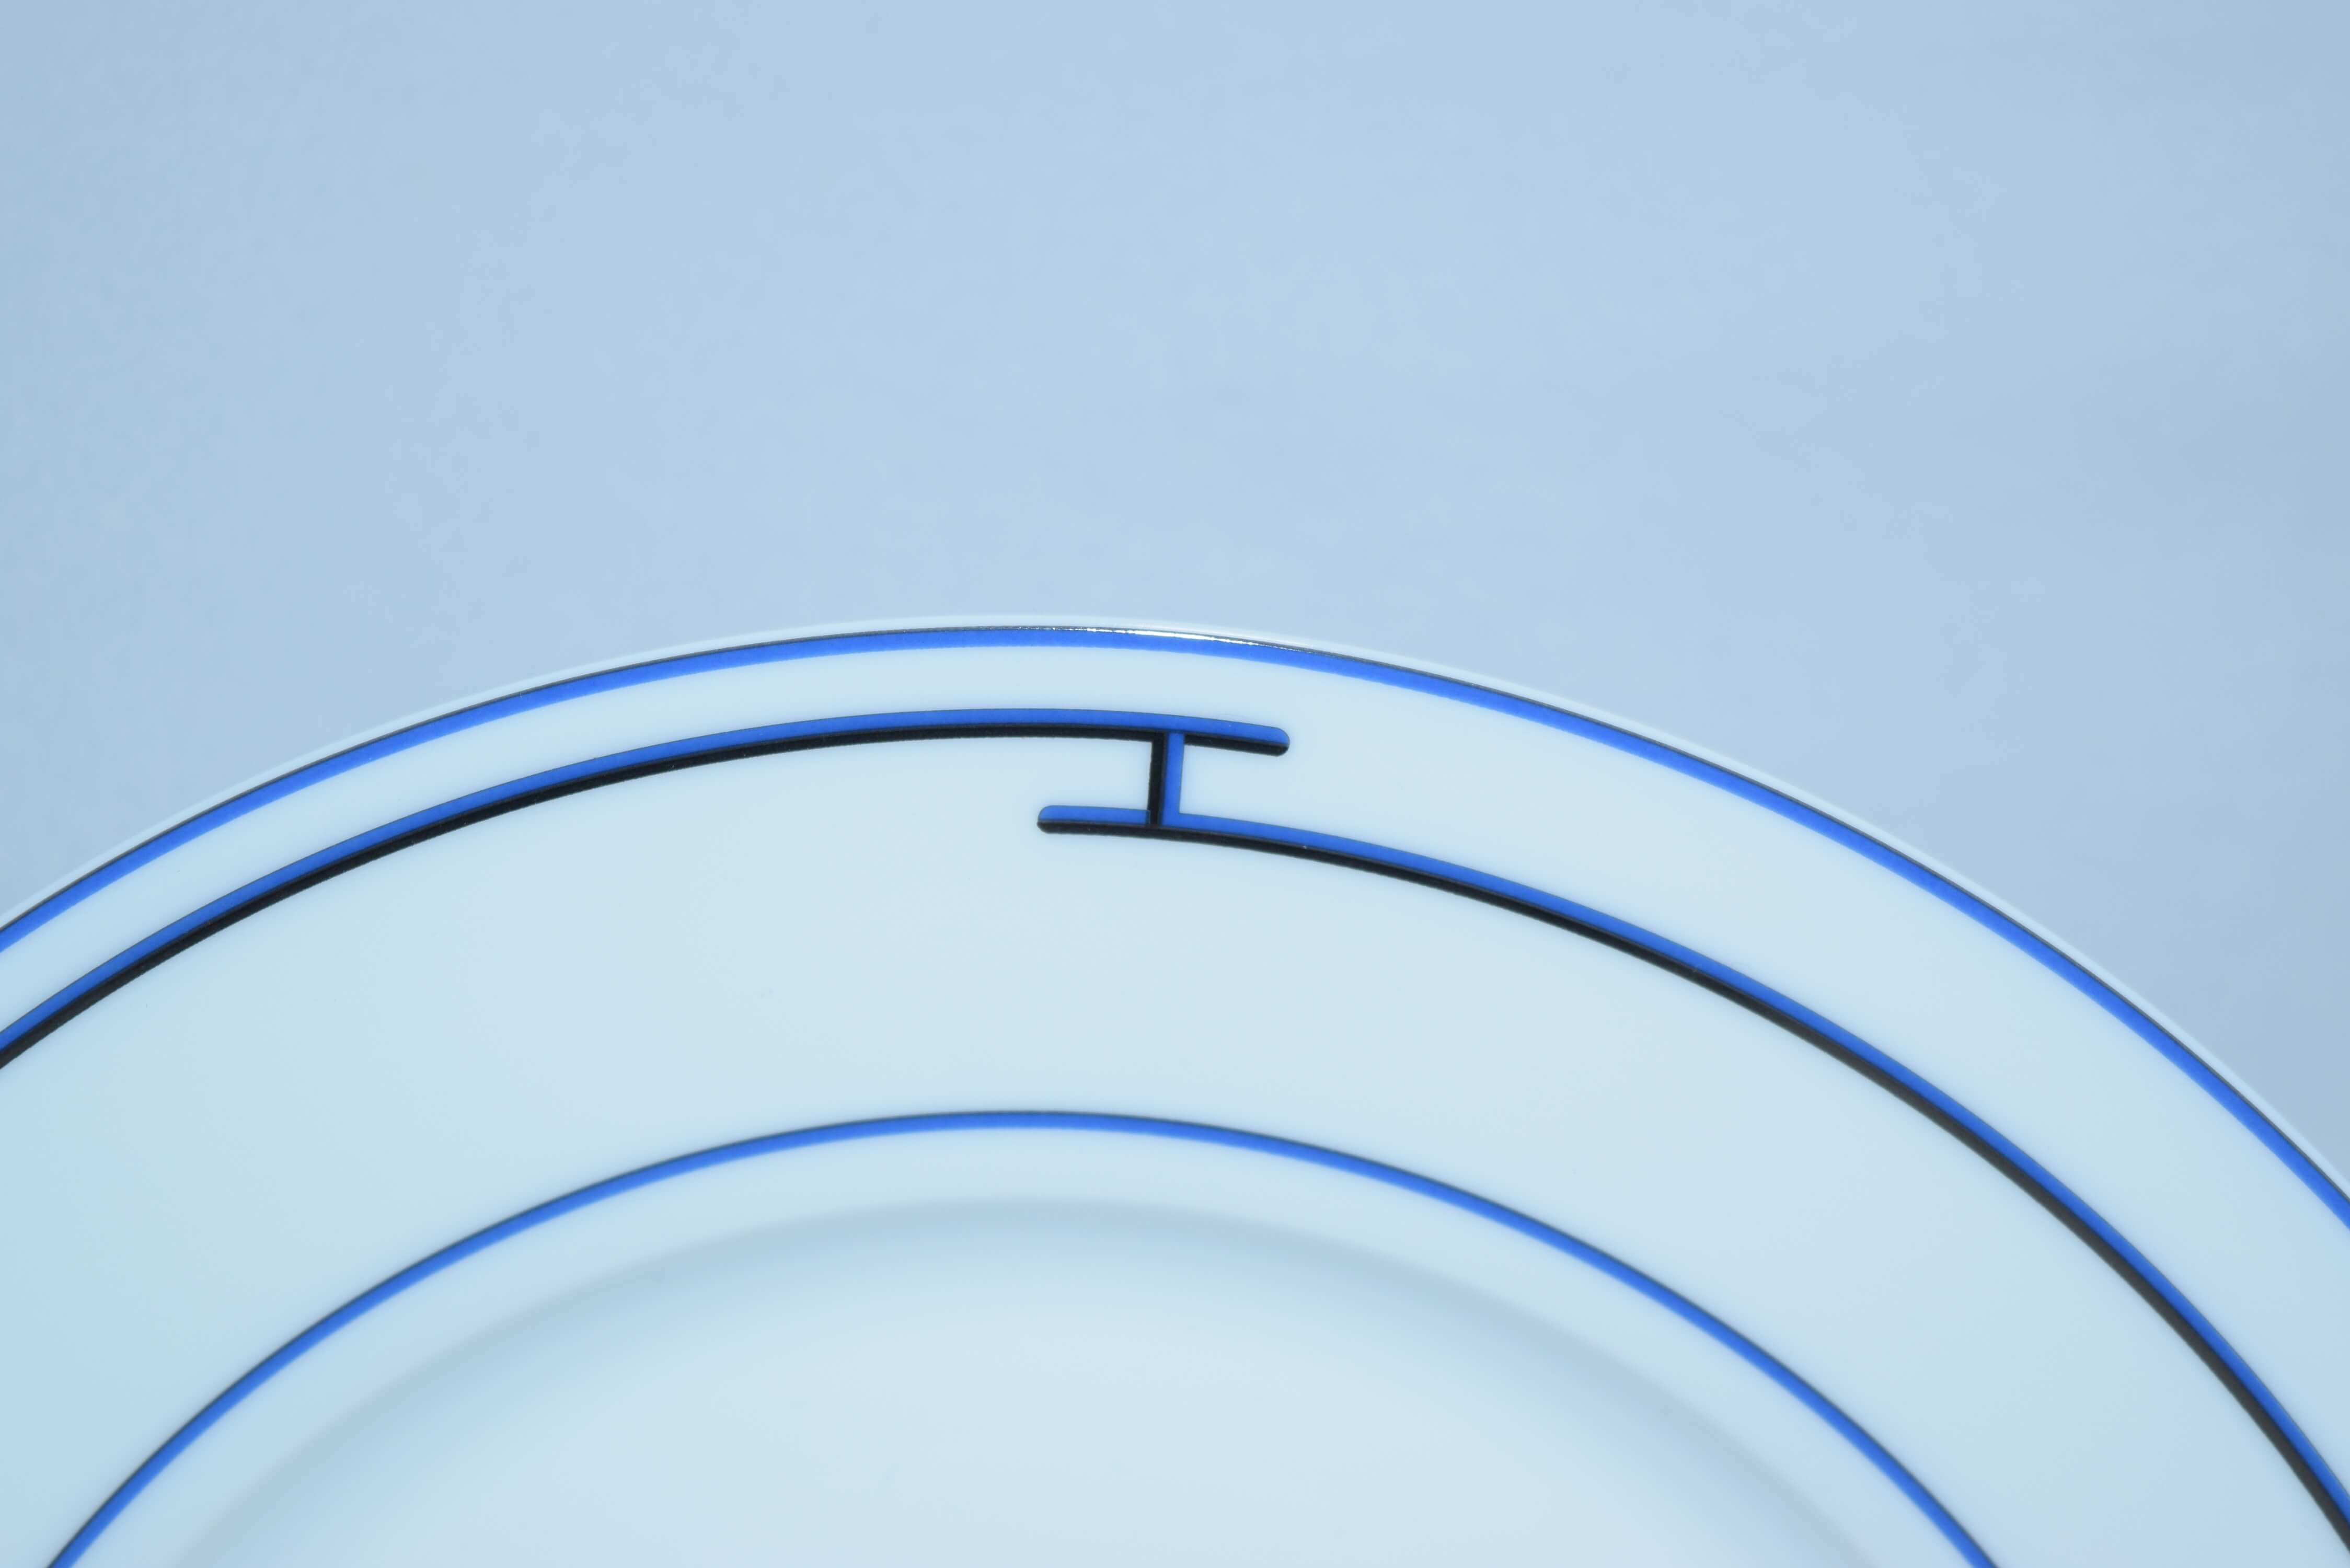 Hermes Rhythm Dinner Plate 10.6" Blue Set of 2 Porcelain 27 cm – art